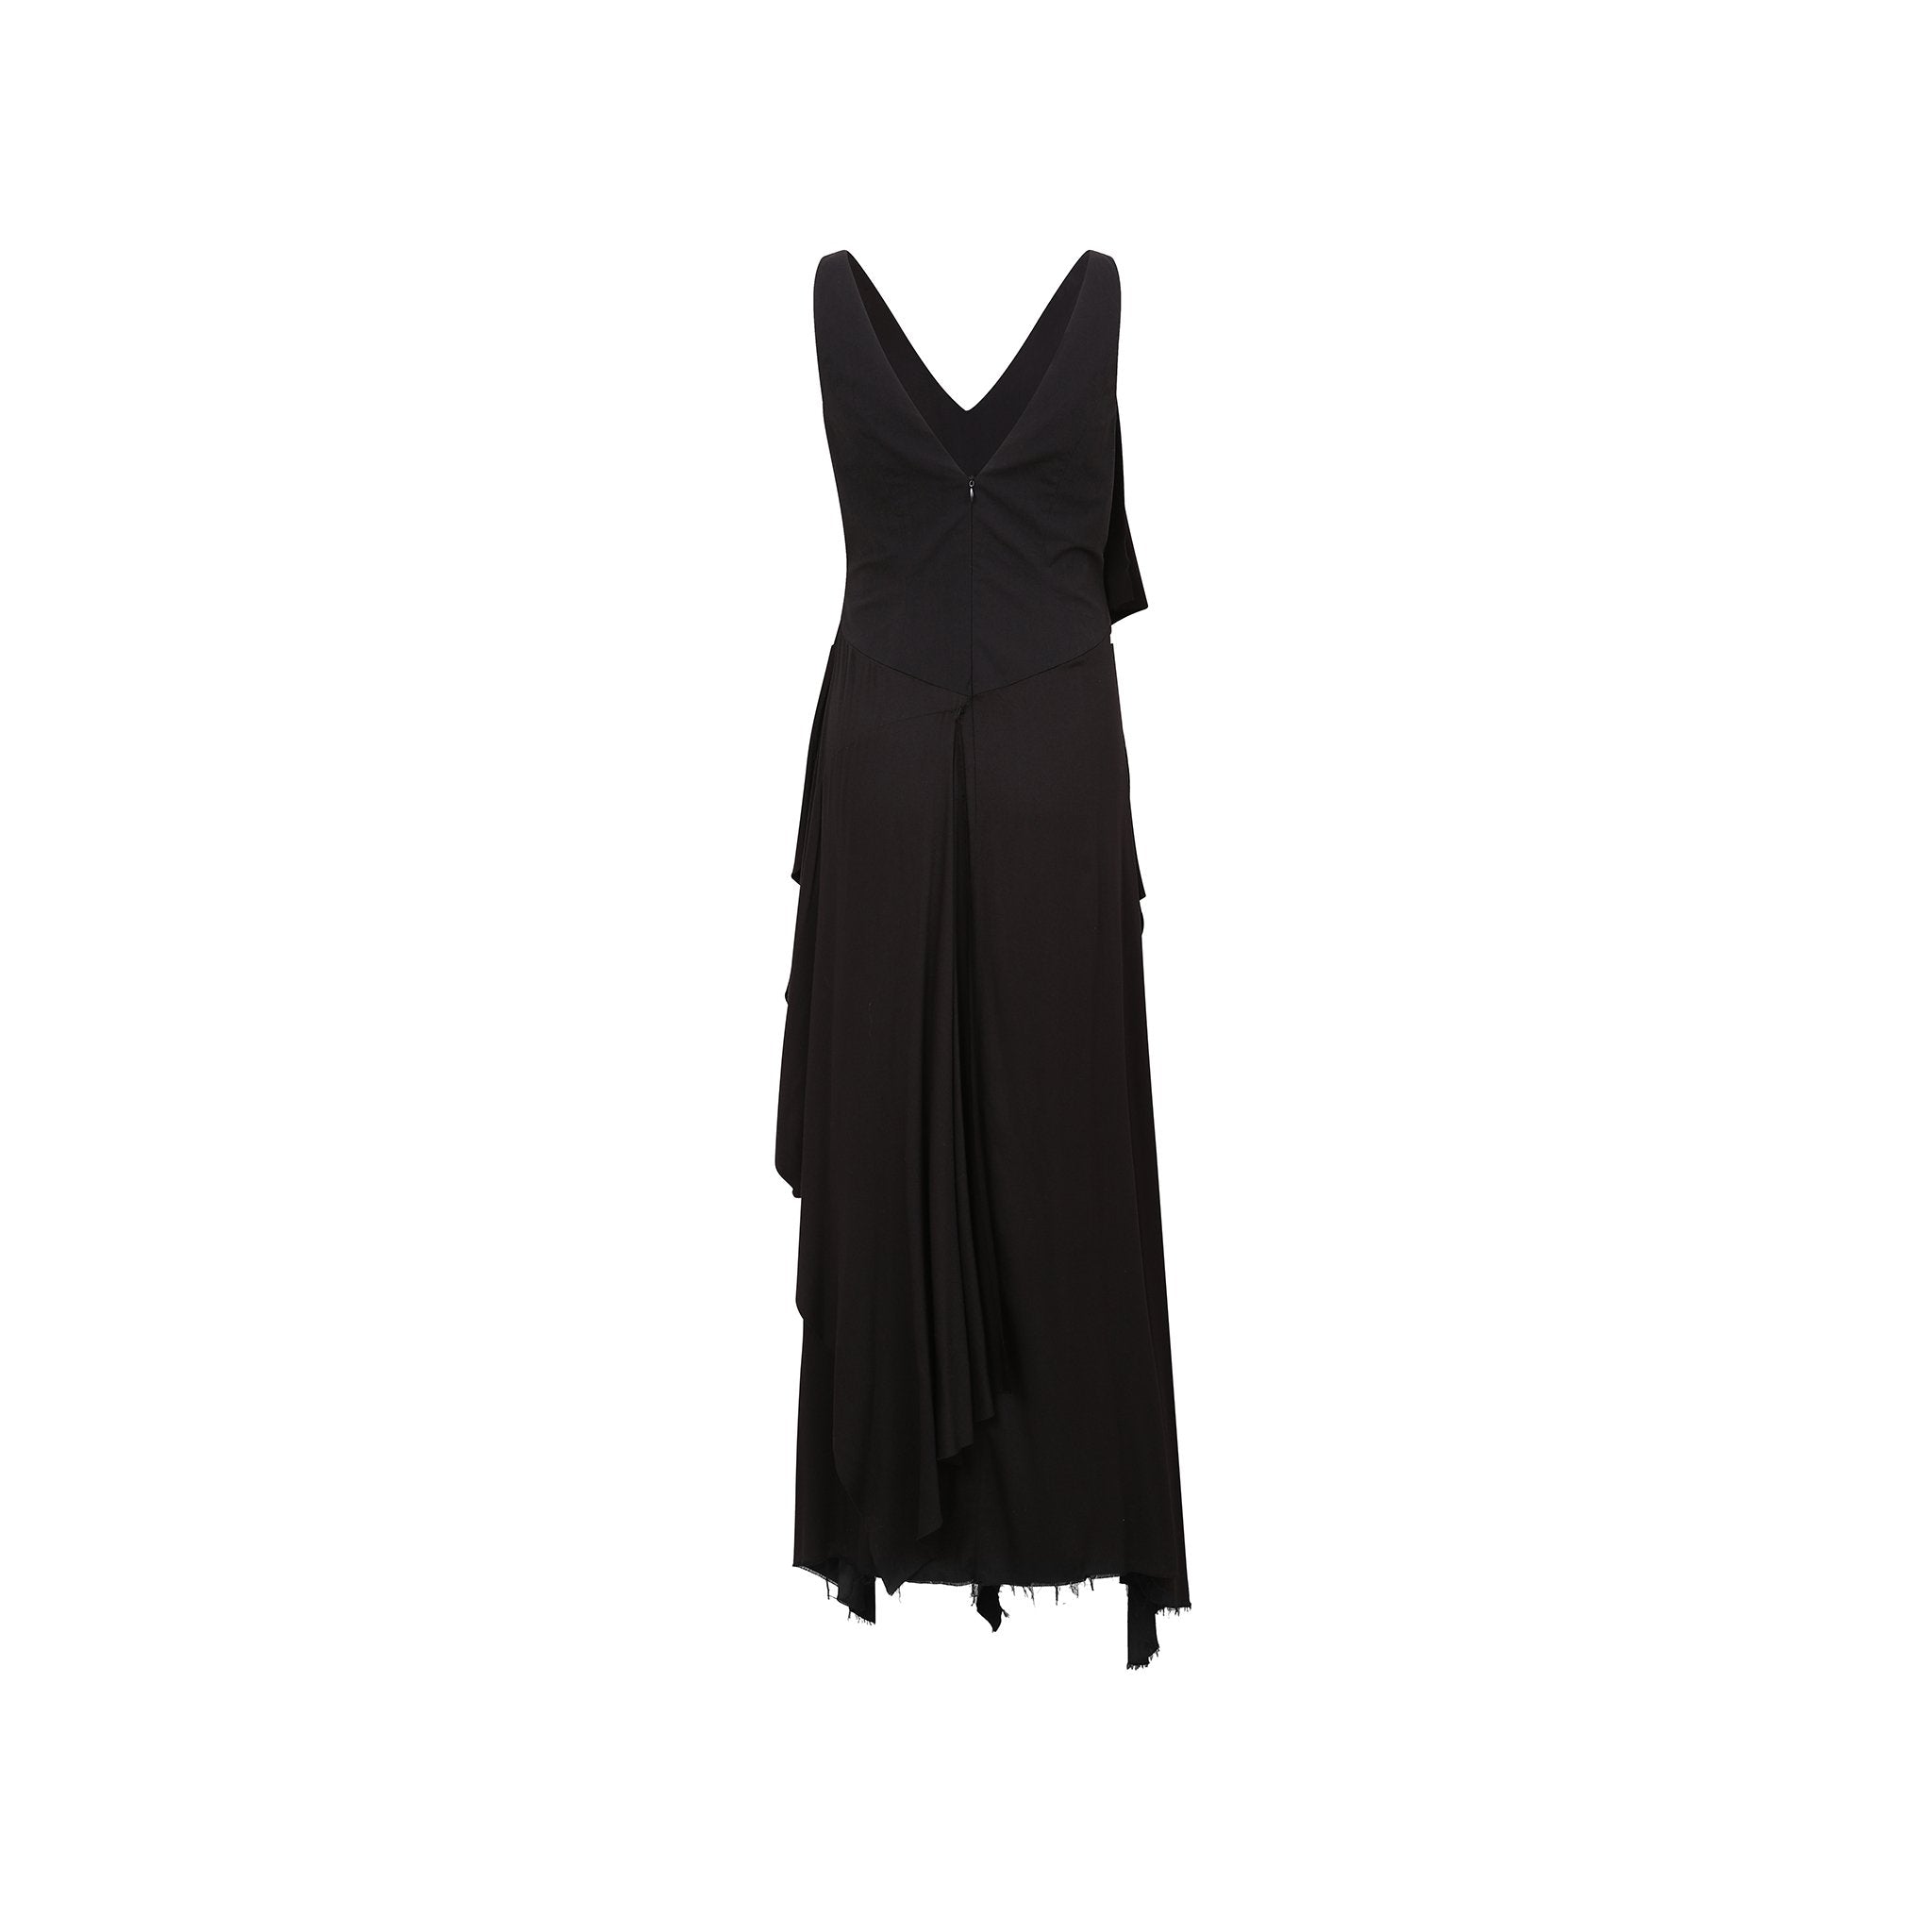 ELYWOOD Black Folded Layer Dress Sleeveless & MADA IN CHINA